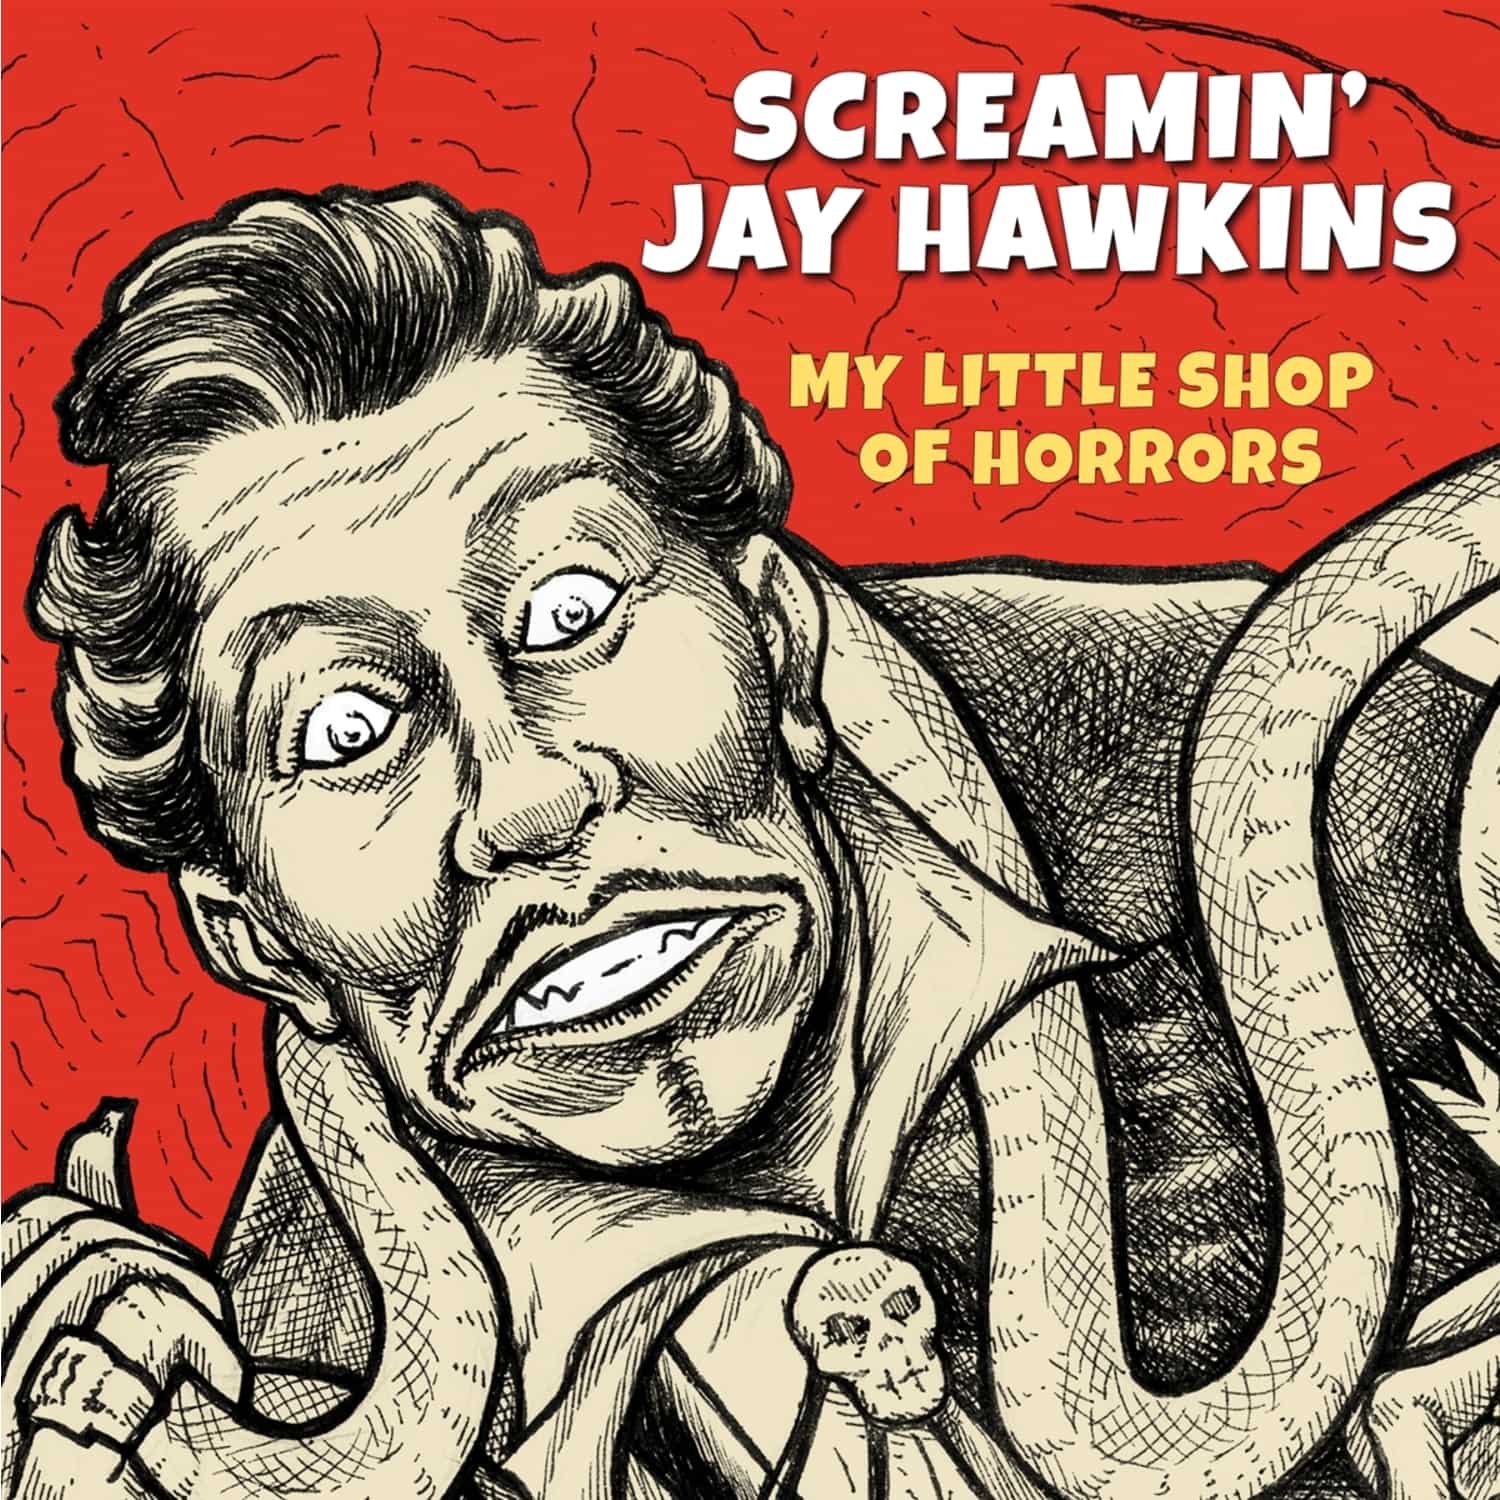  Jay-Screamin - Hawkins - MY LITTLE SHOP OF HORRORS 